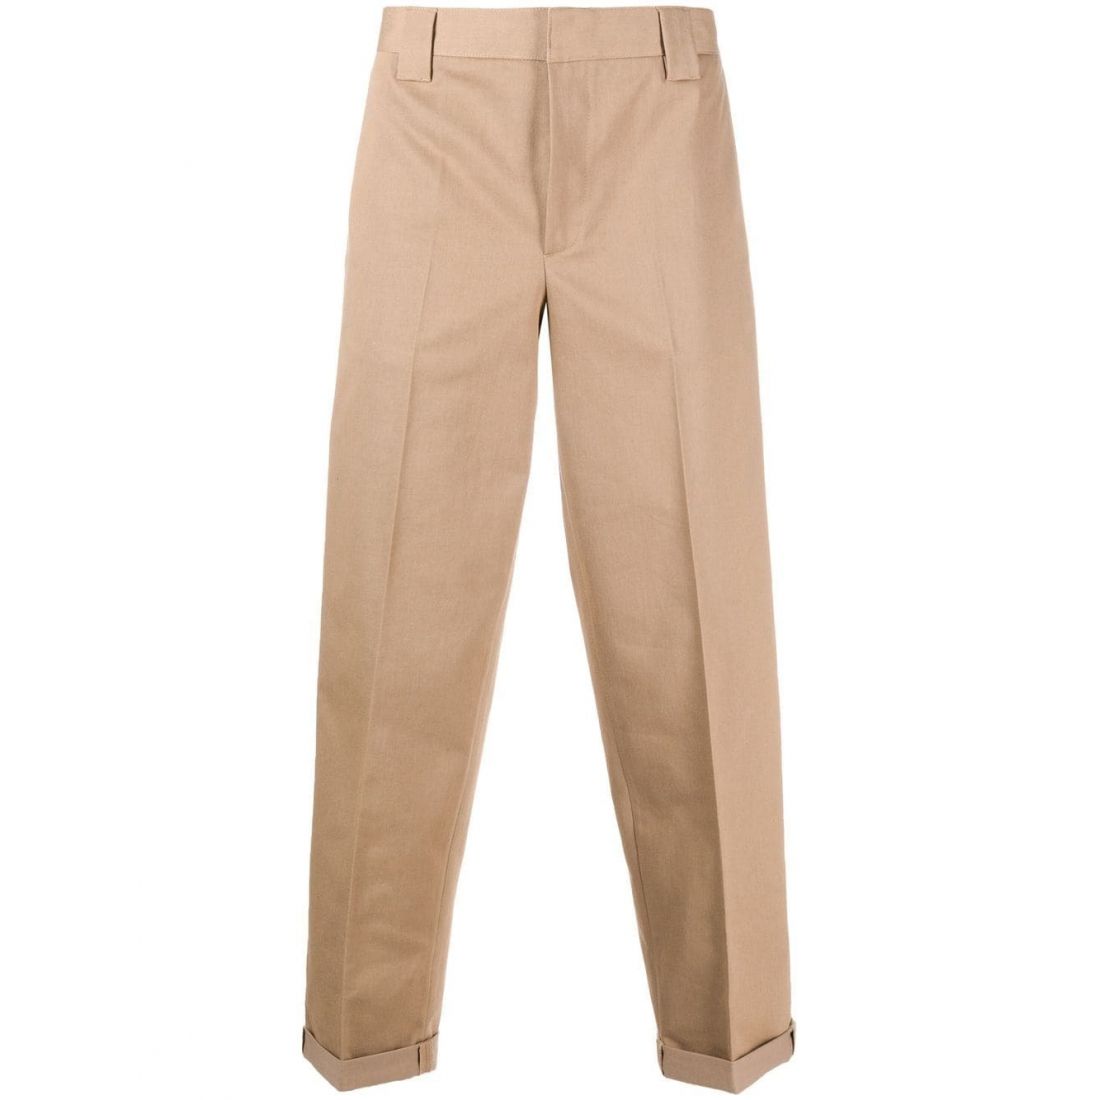 Golden Goose Deluxe Brand - Pantalon pour Hommes